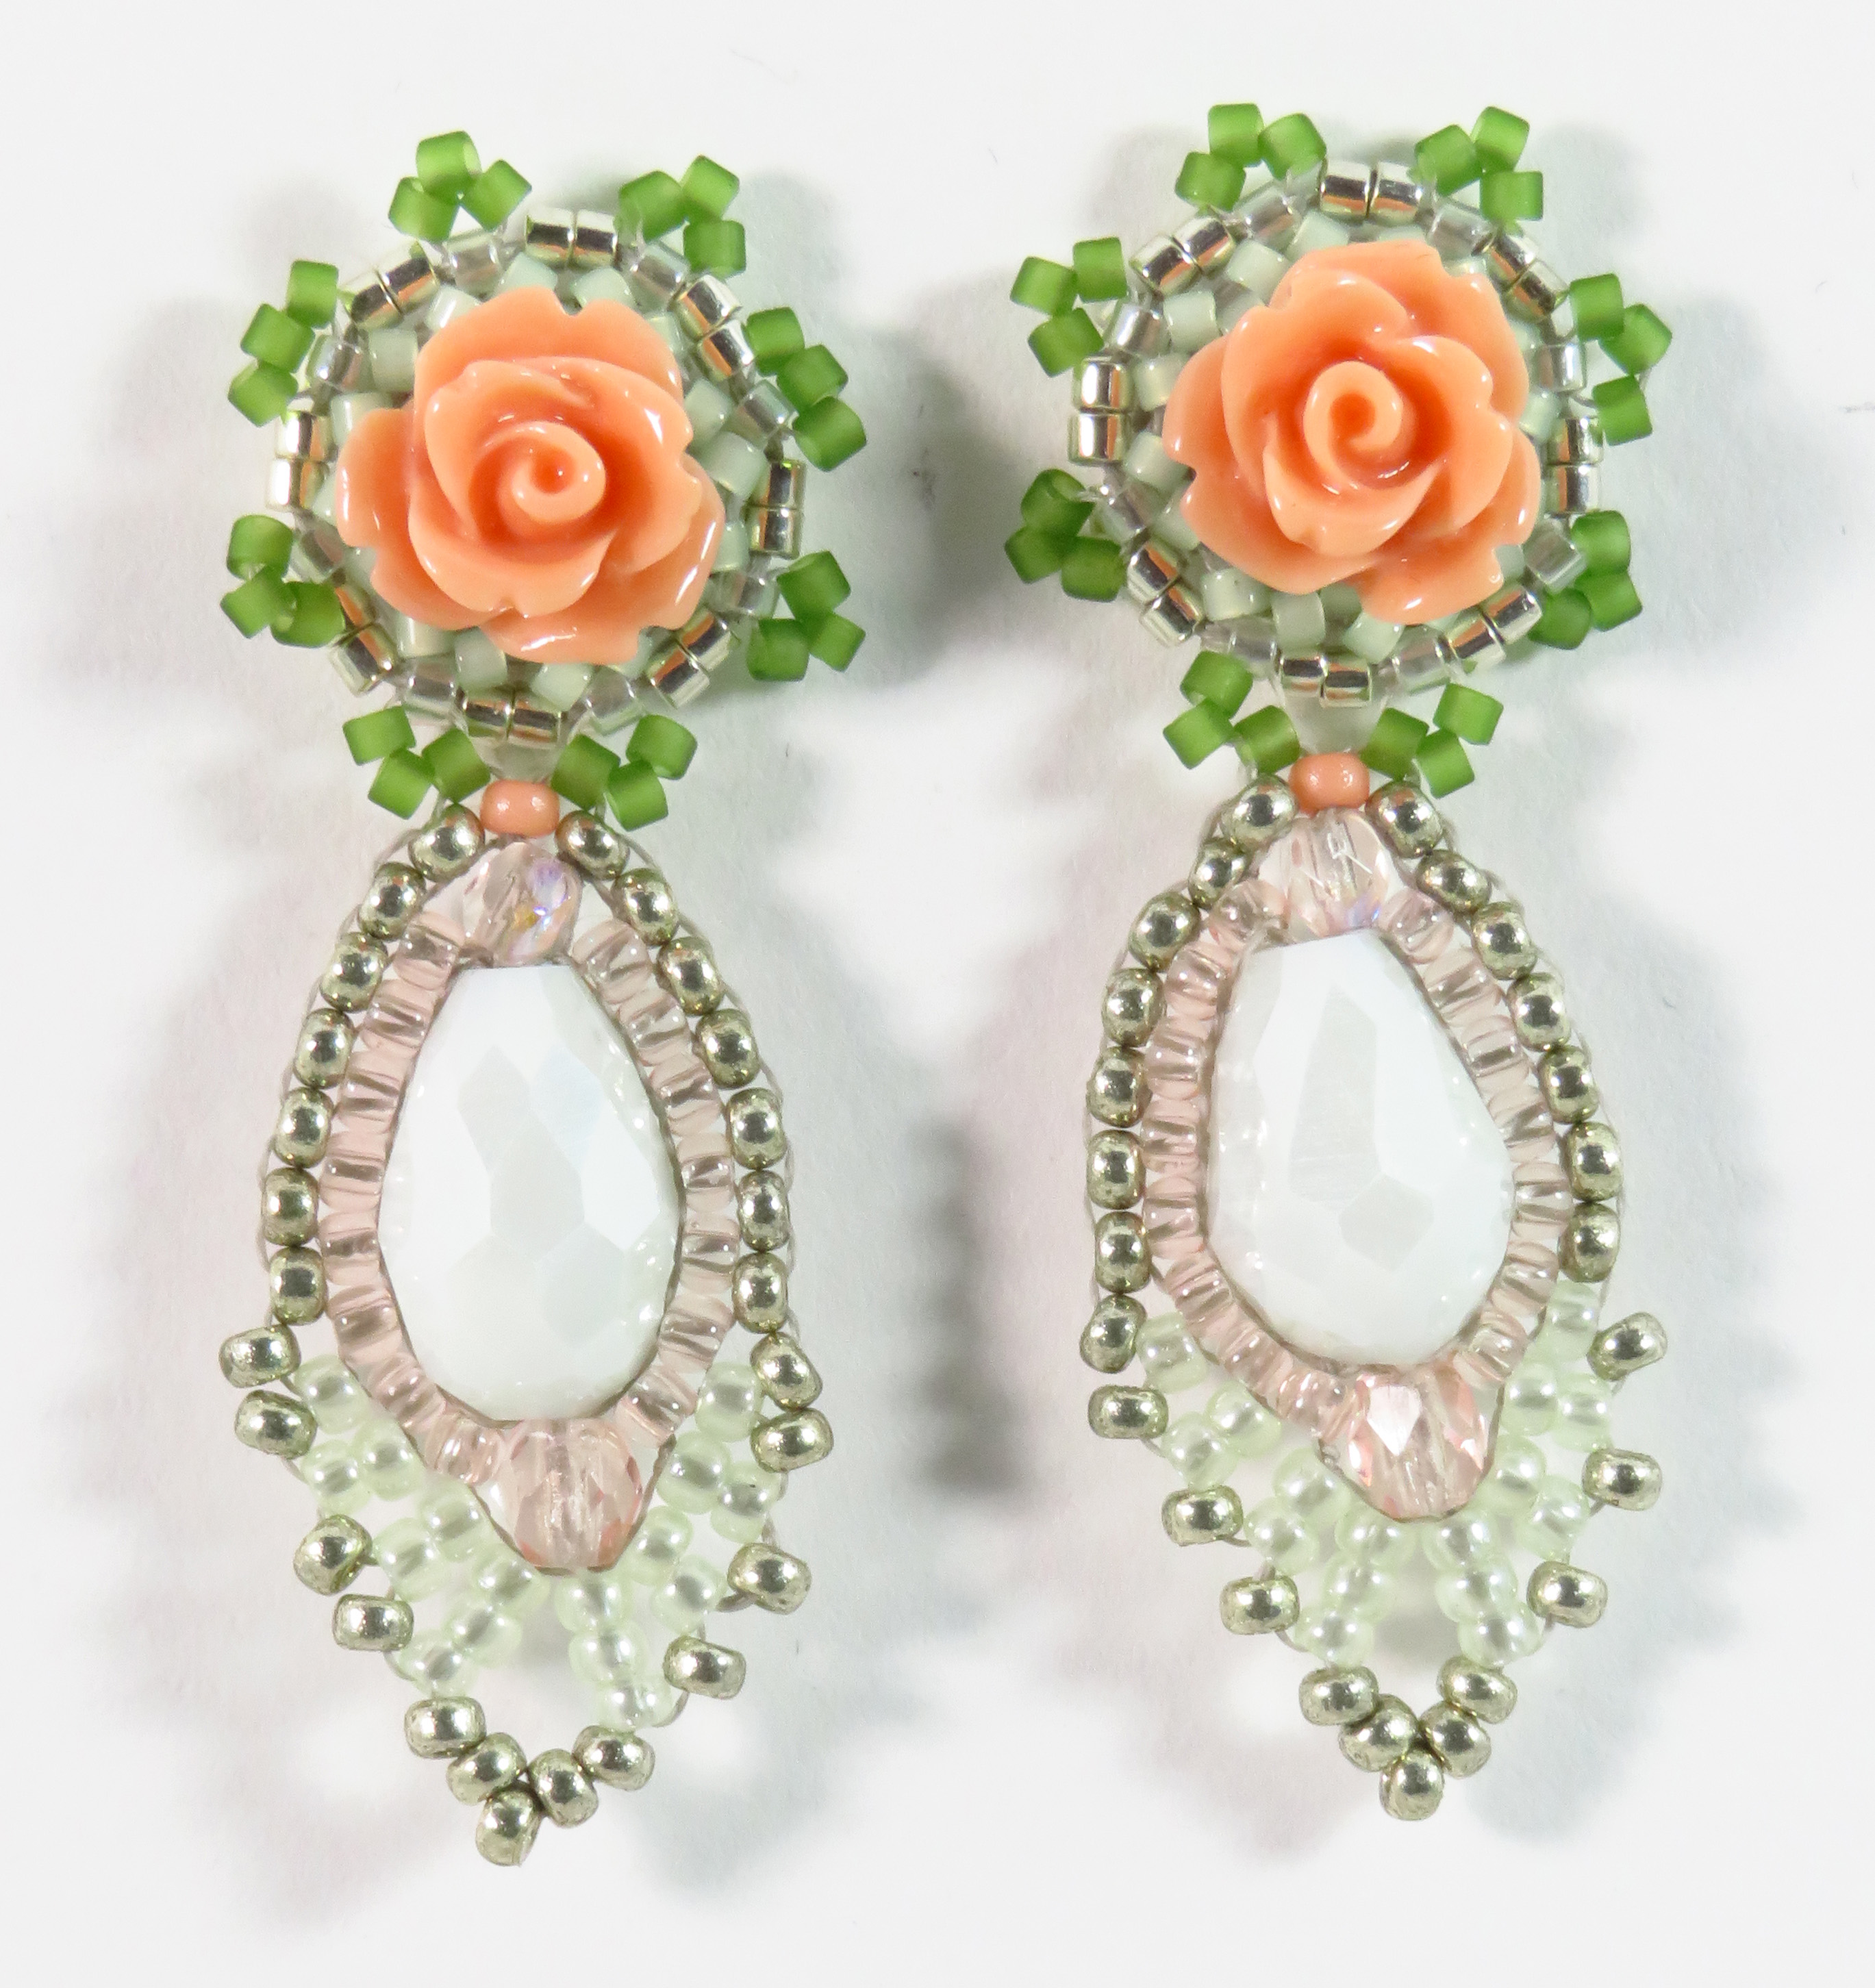 Beaded pastel rose earrings by Bonnie Van Hall